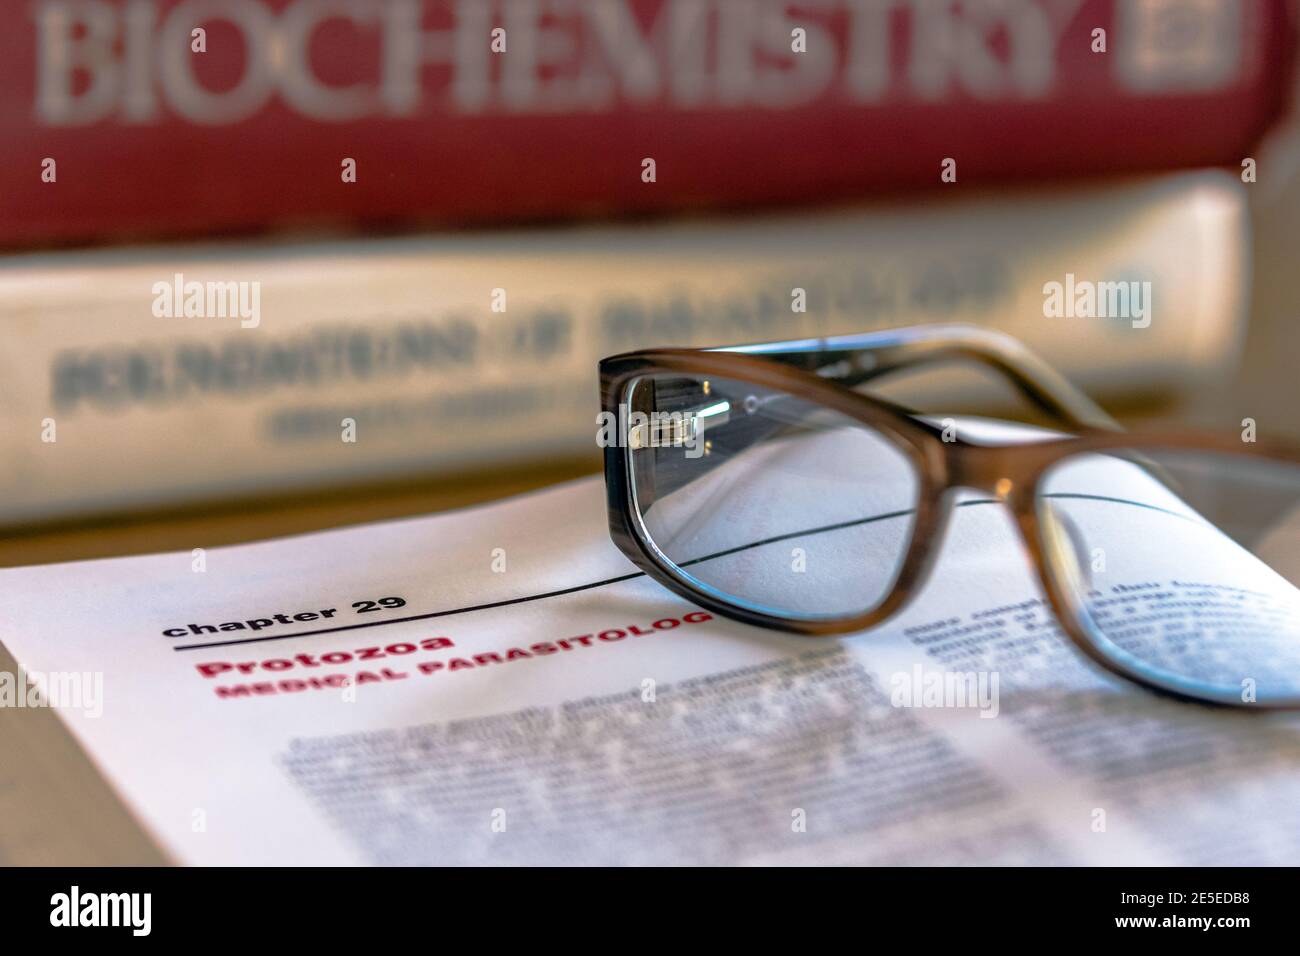 Les lunettes sur le dessus d'un livre ouvert avec les protozoaires parasitologie médicale dans l'accent avec d'autres manuels de sciences de la vie dans le contexte des problèmes de mise au point Banque D'Images